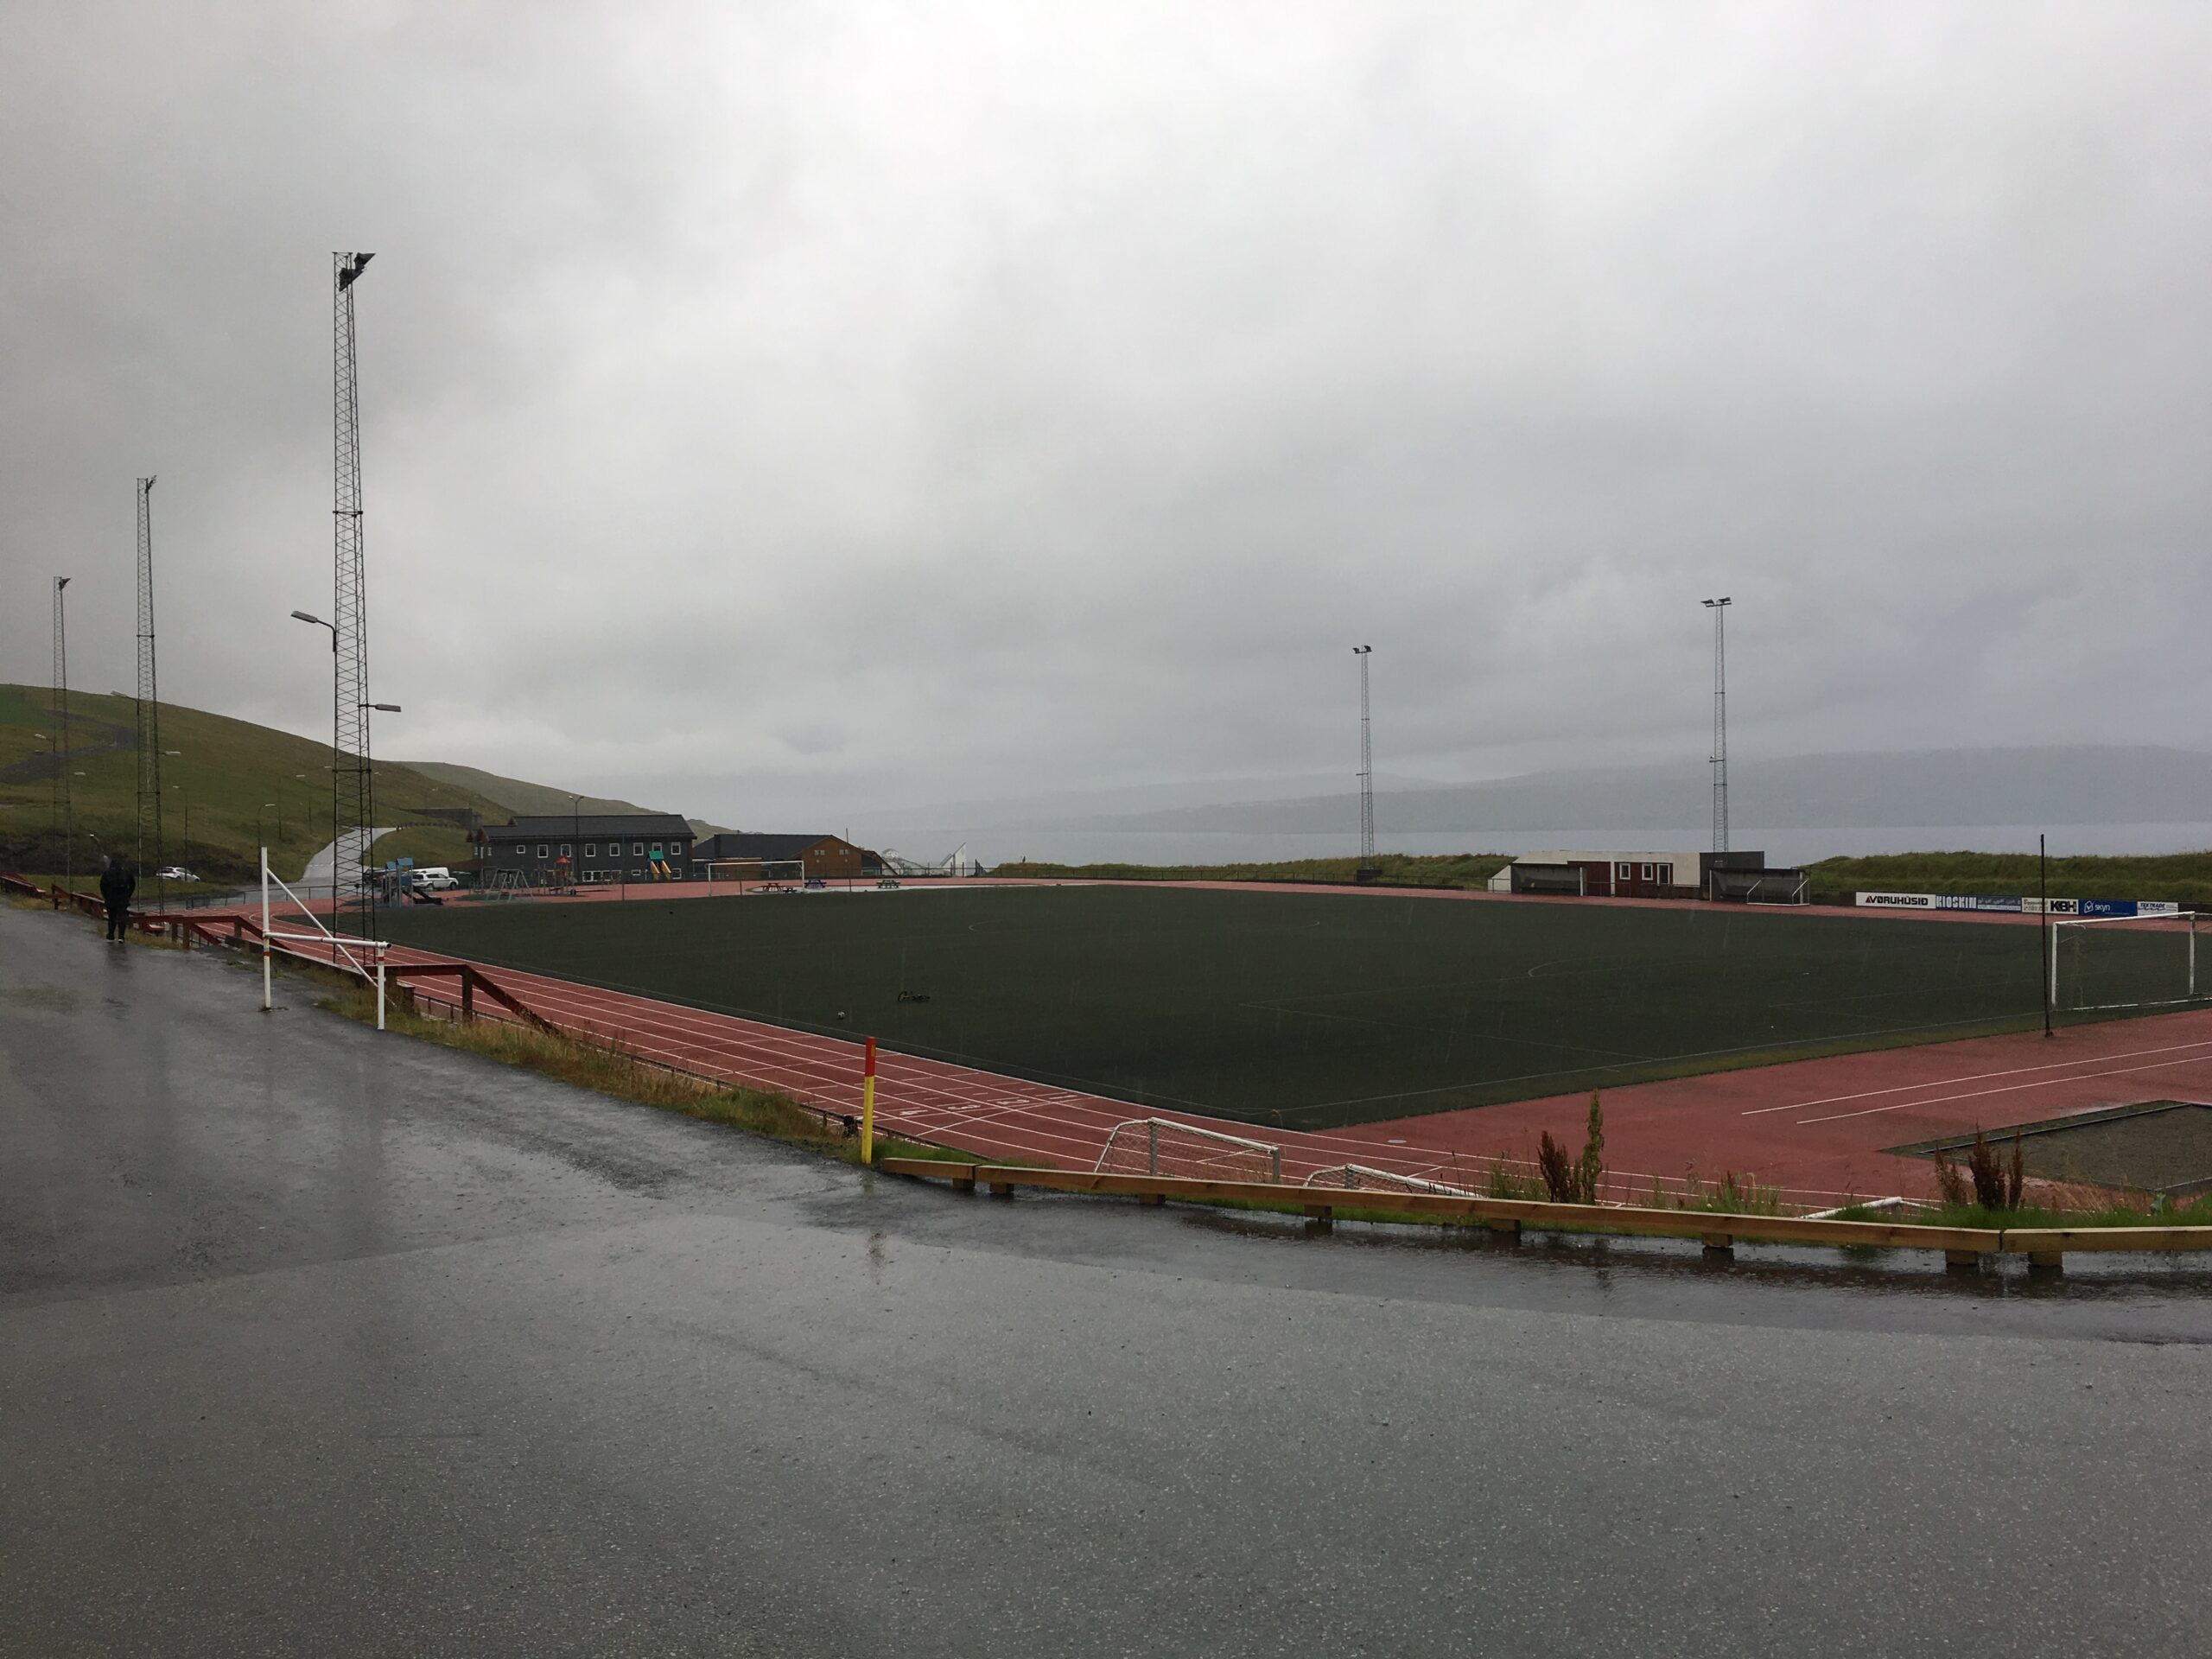 Det tidligere nationale stadion, som ligger i nabobyen til Runavik. De er i gang med at etablere et nyt stadion i Thorshavn.